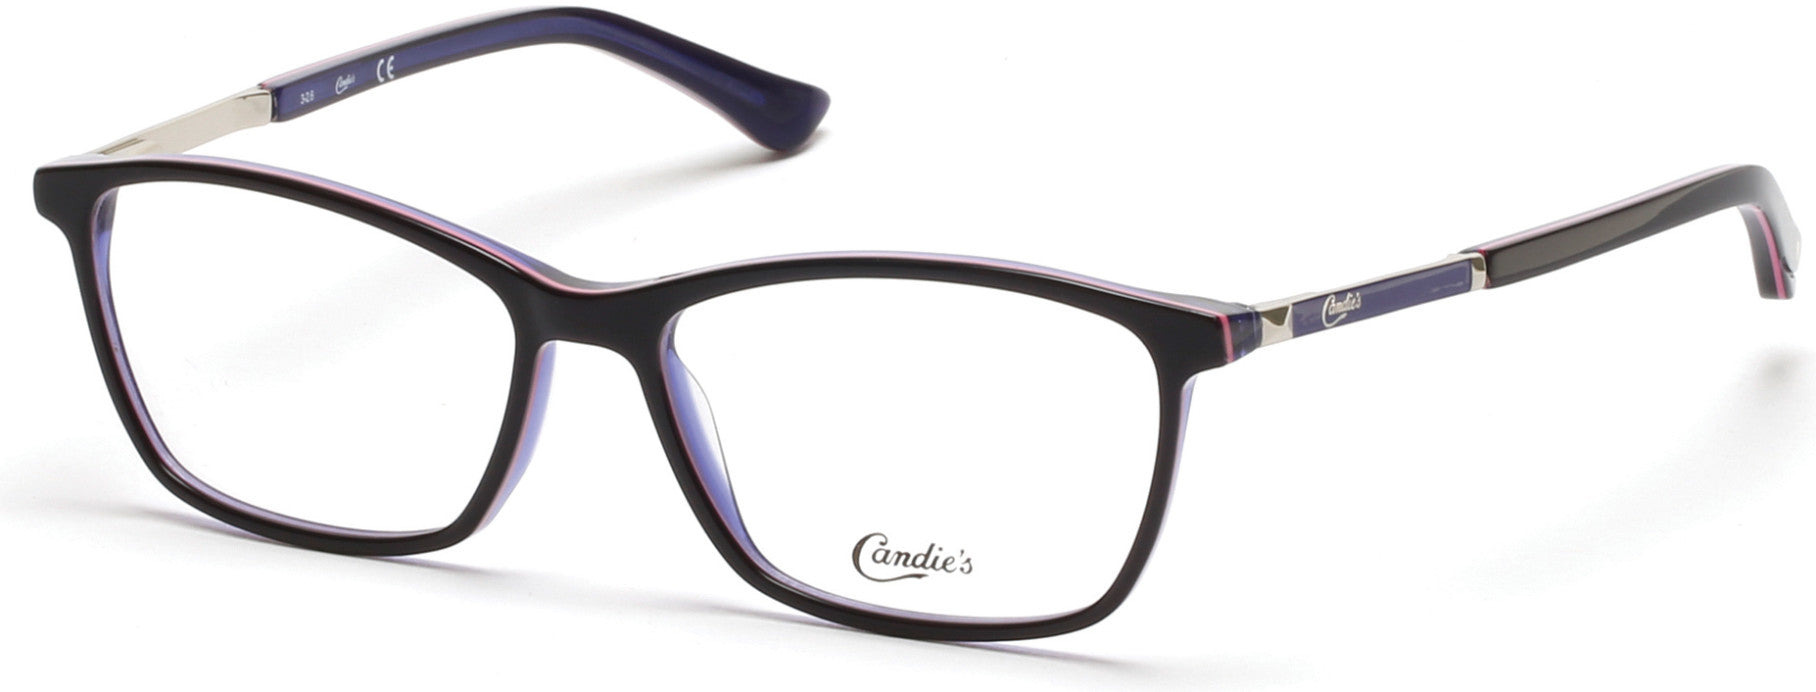 Candies CA0143 Eyeglasses 005-005 - Black